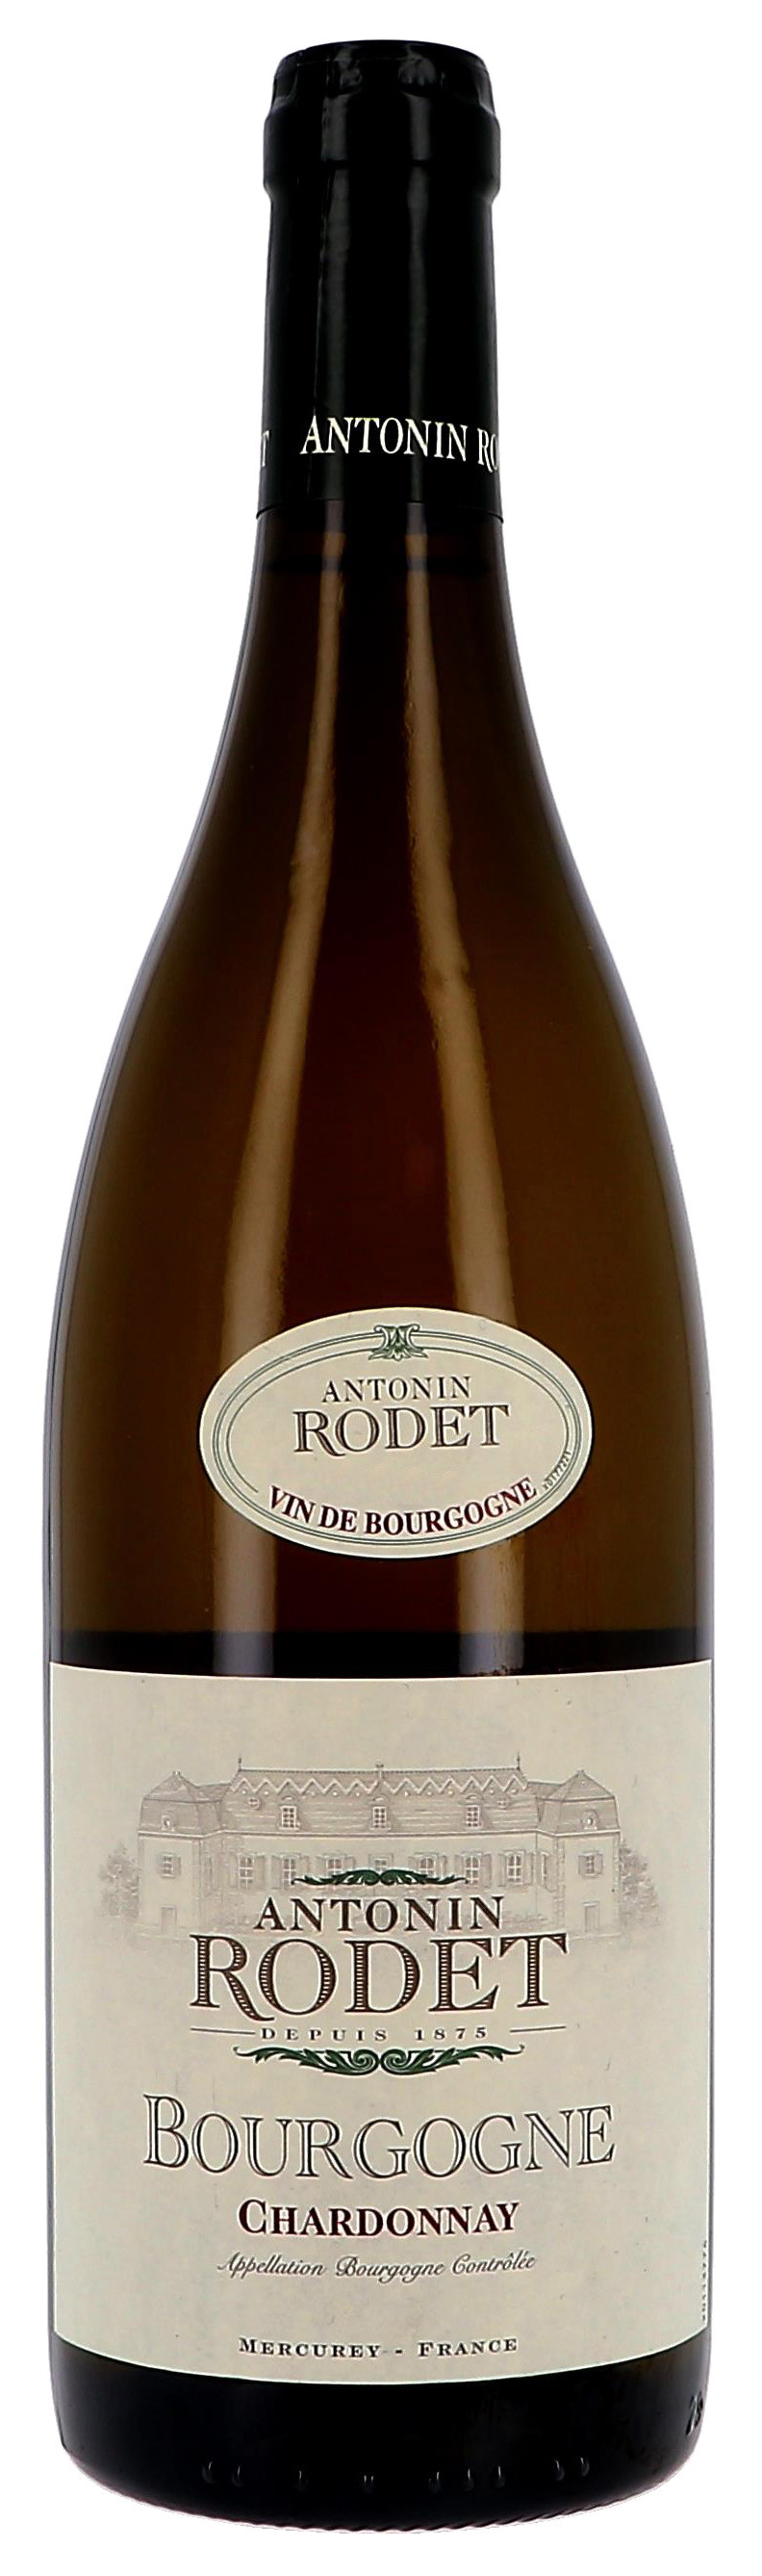 Bourgogne chardonnay 75cl 08 antonin rodet